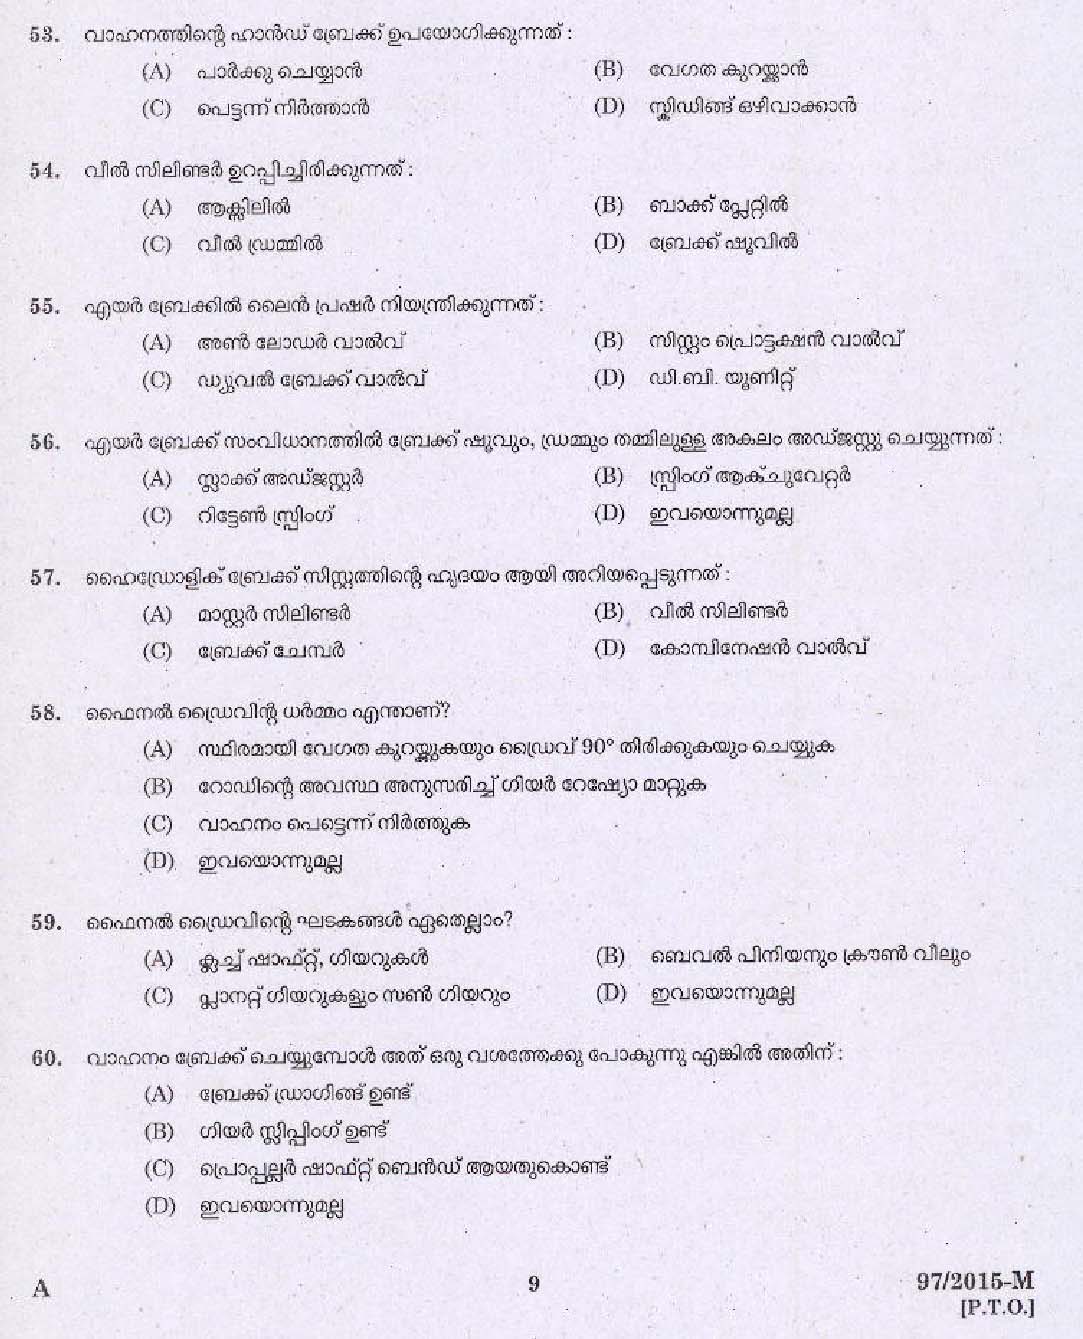 Kerala PSC Driver Grade II Exam 2015 Question Paper Code 972015 M 7